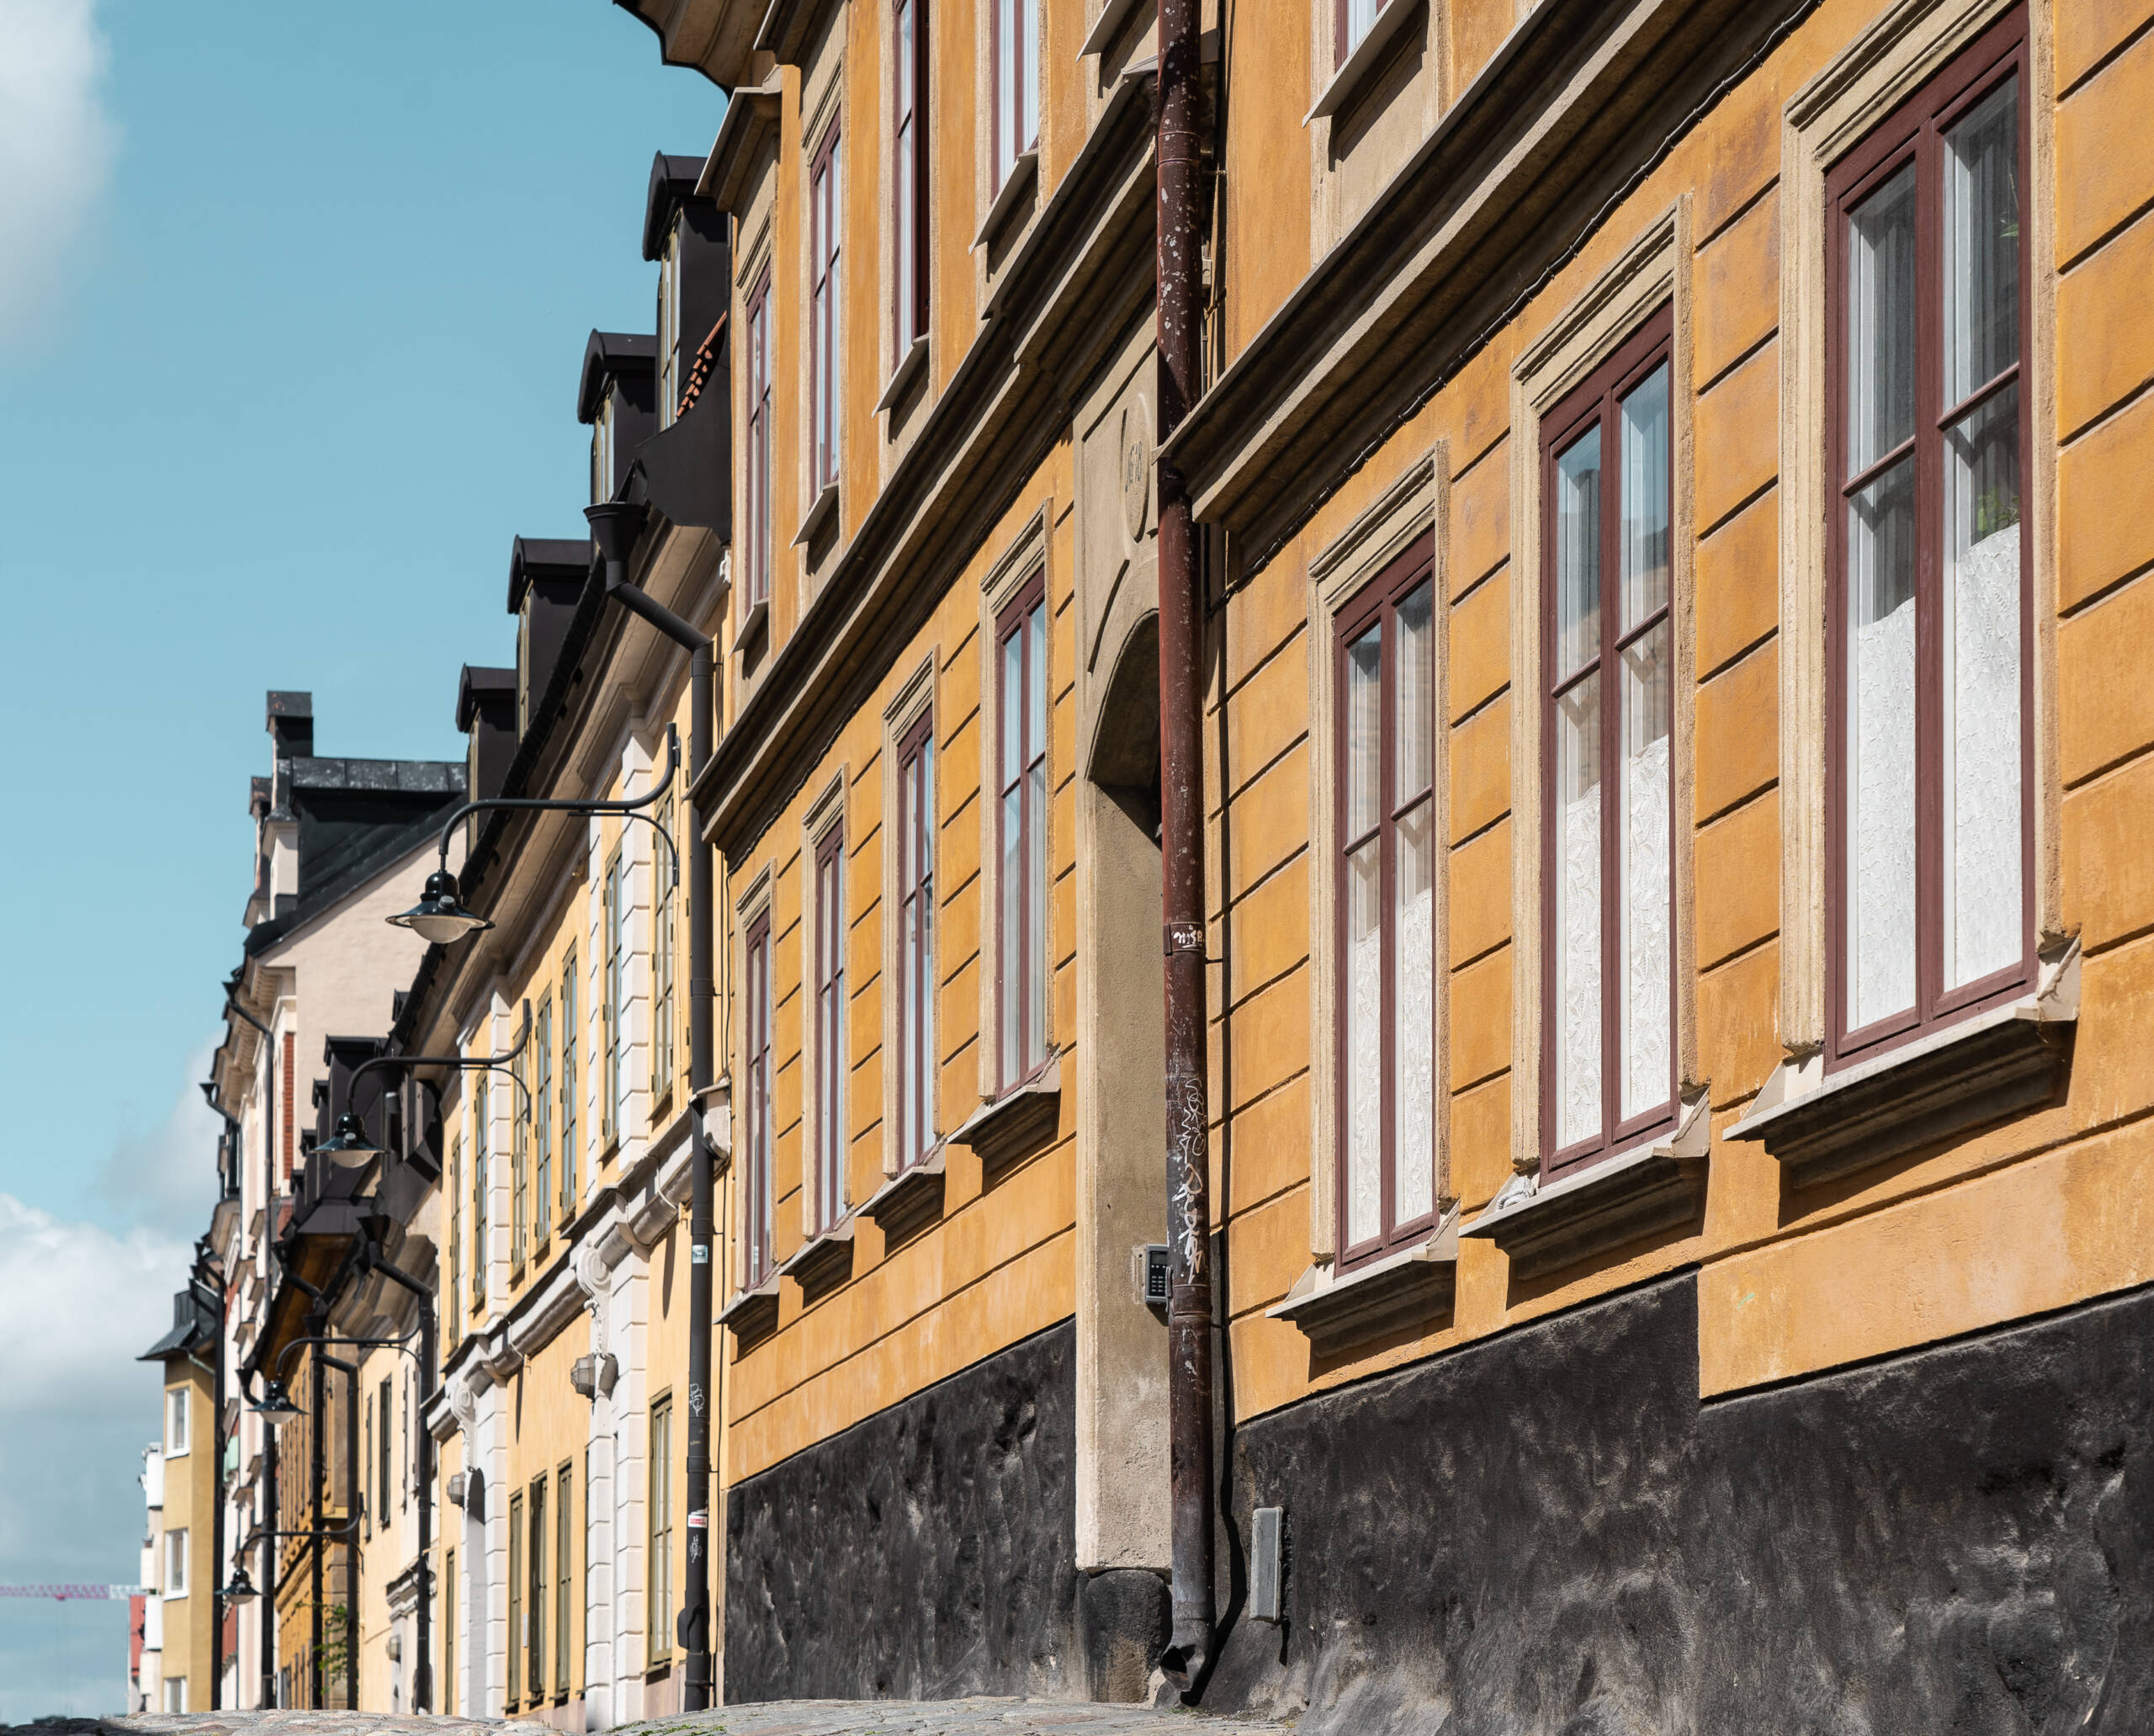 Ein Geheimtipp für Fans der Triologie von Stieg Larsson ist das Haus in der Bellmansgatan, das als Drehort diente.